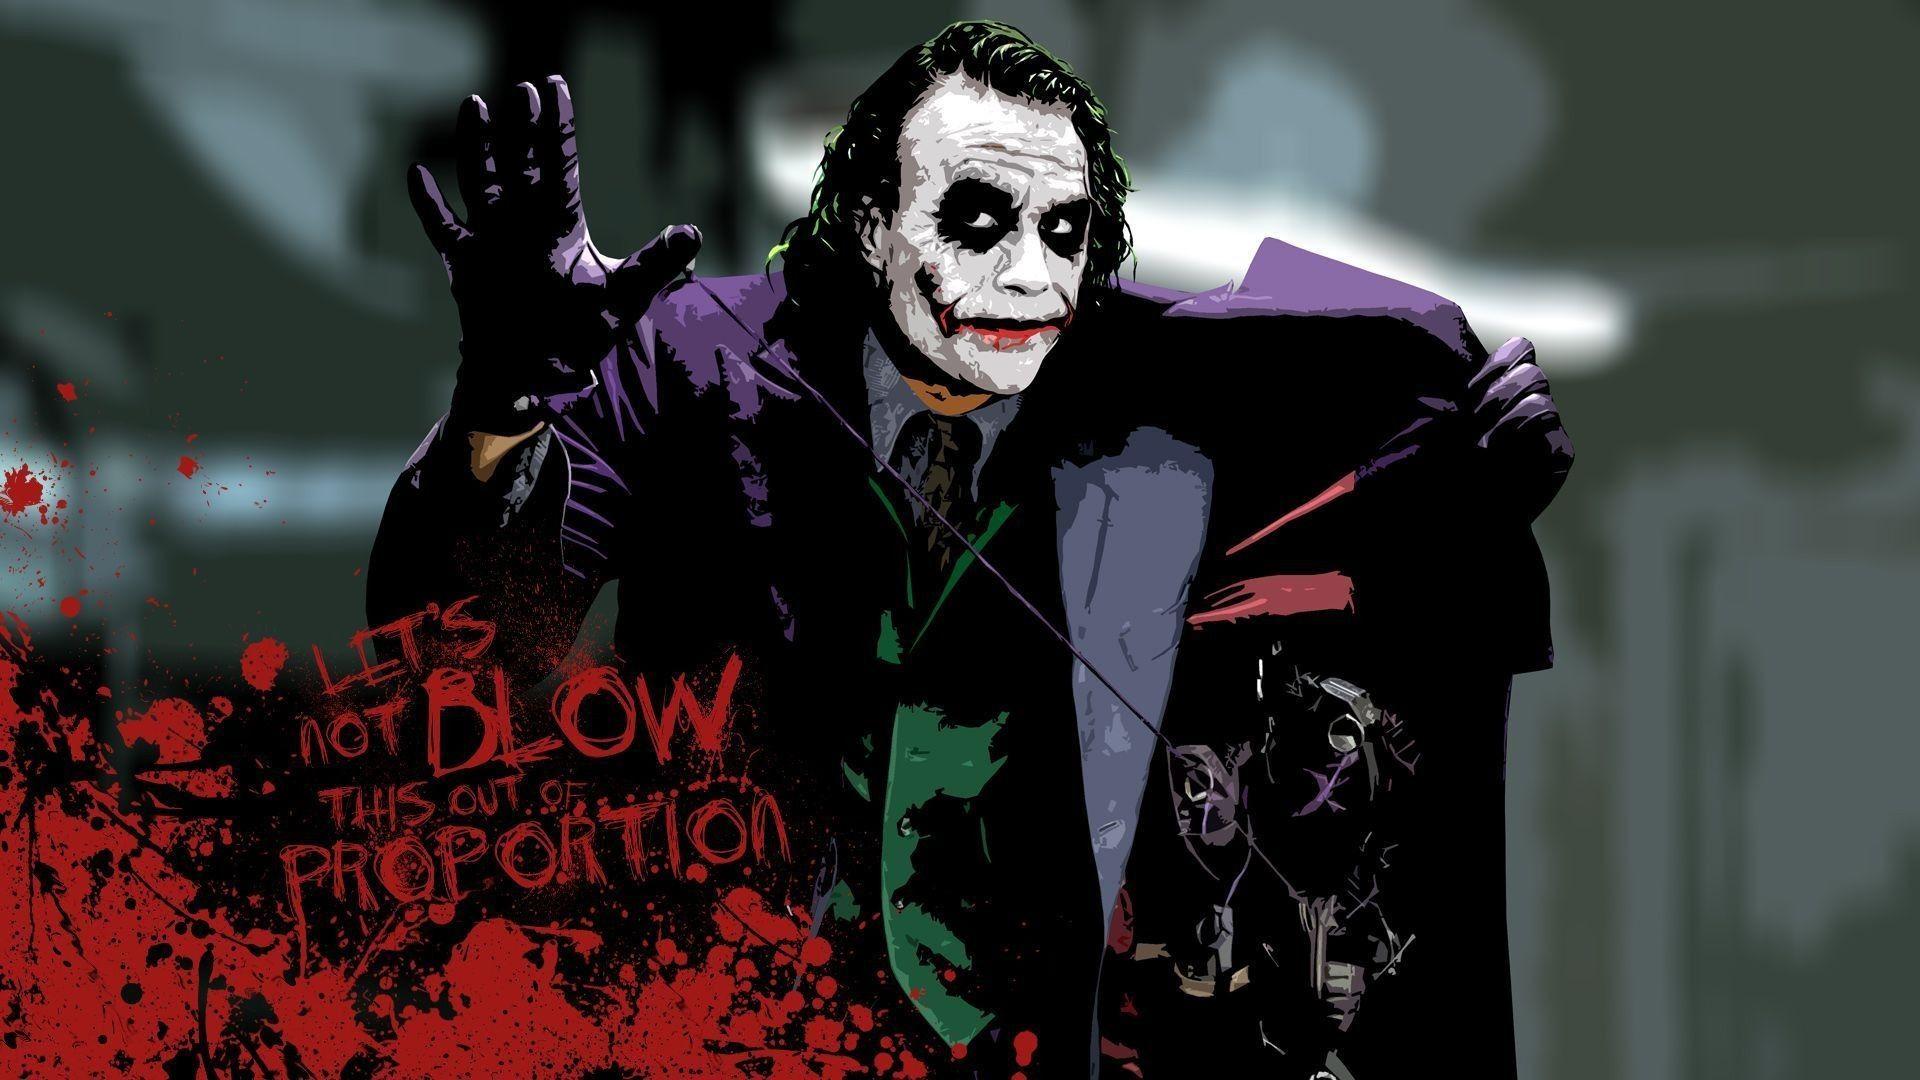 Heath Ledger Joker Quotes Wallpaper Free Heath Ledger Joker